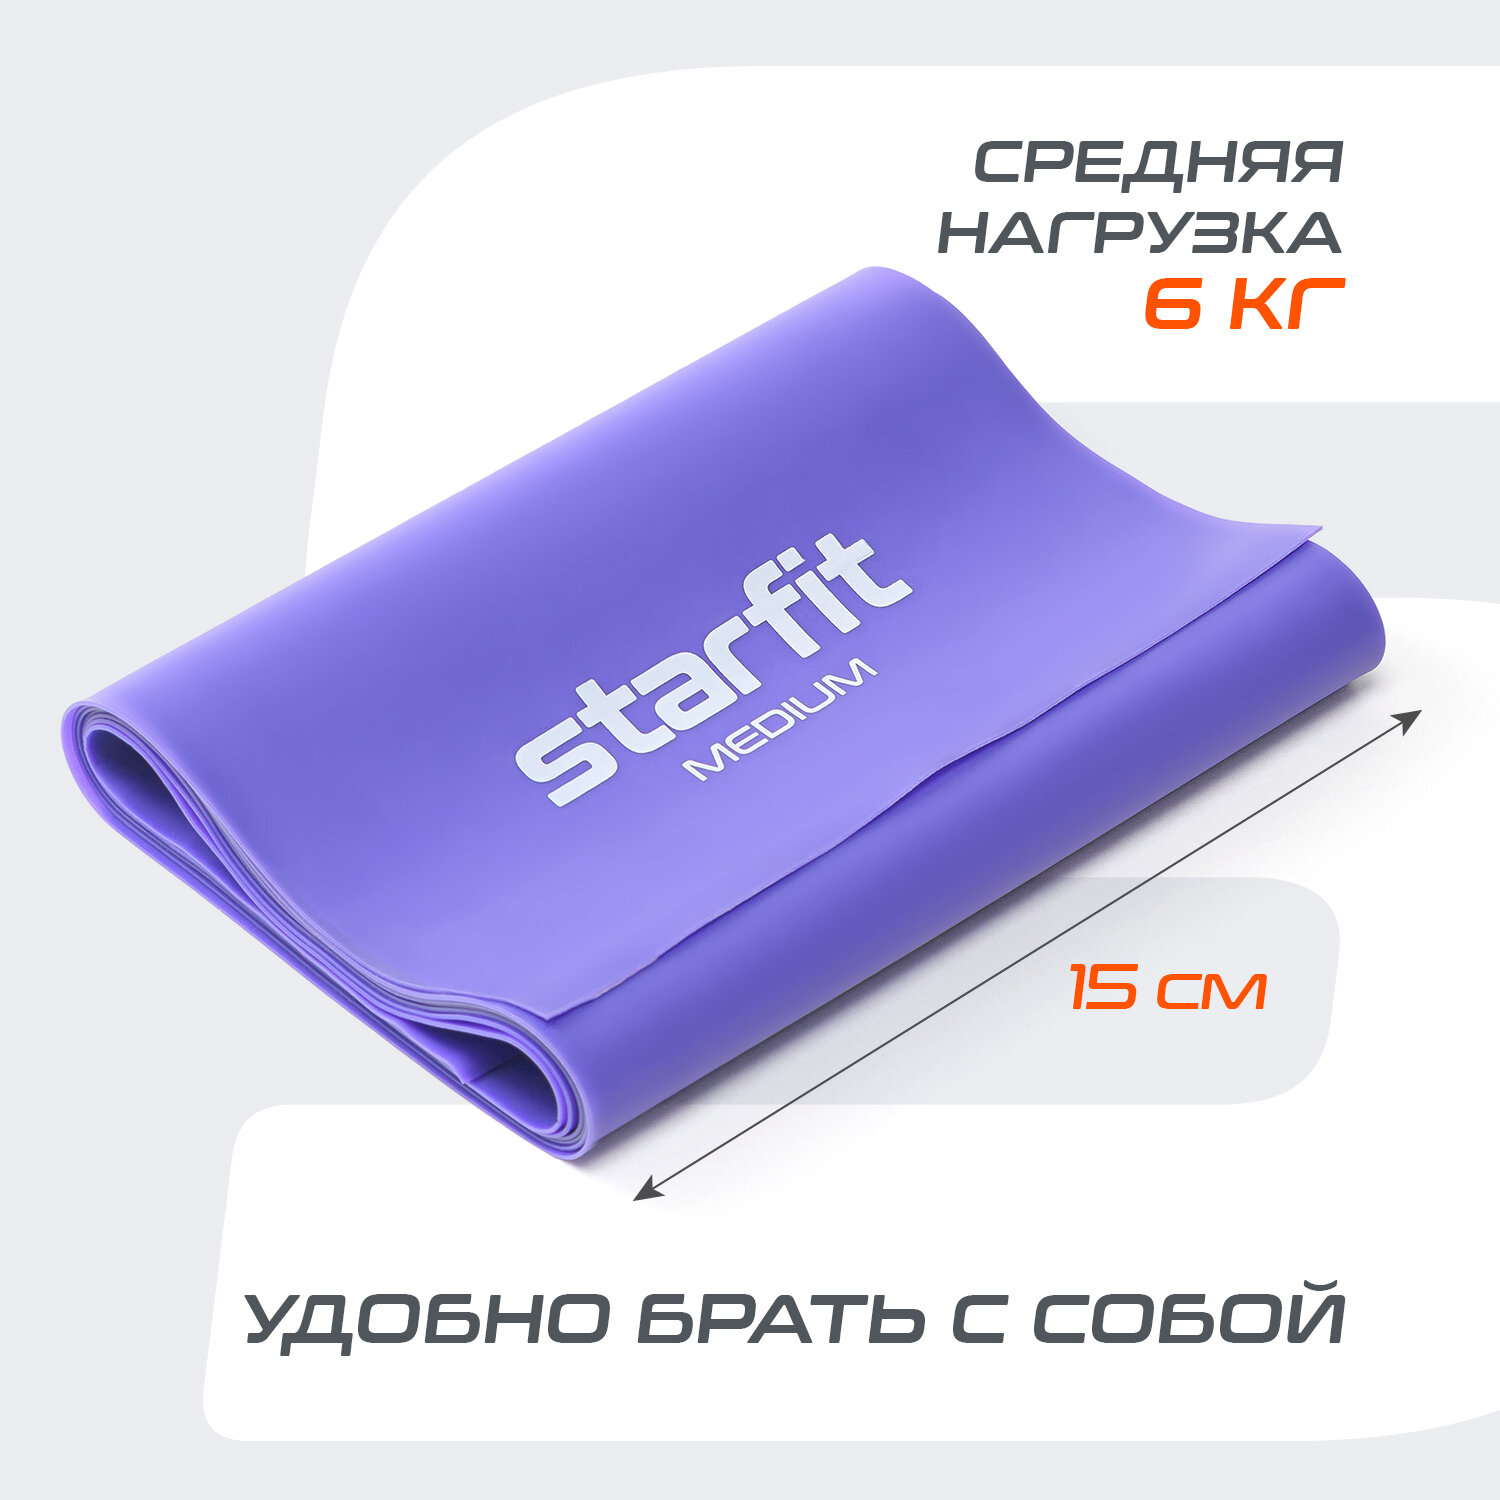 Лента для пилатеса STARFIT ES-201, фиолетовый, набор 3 шт.